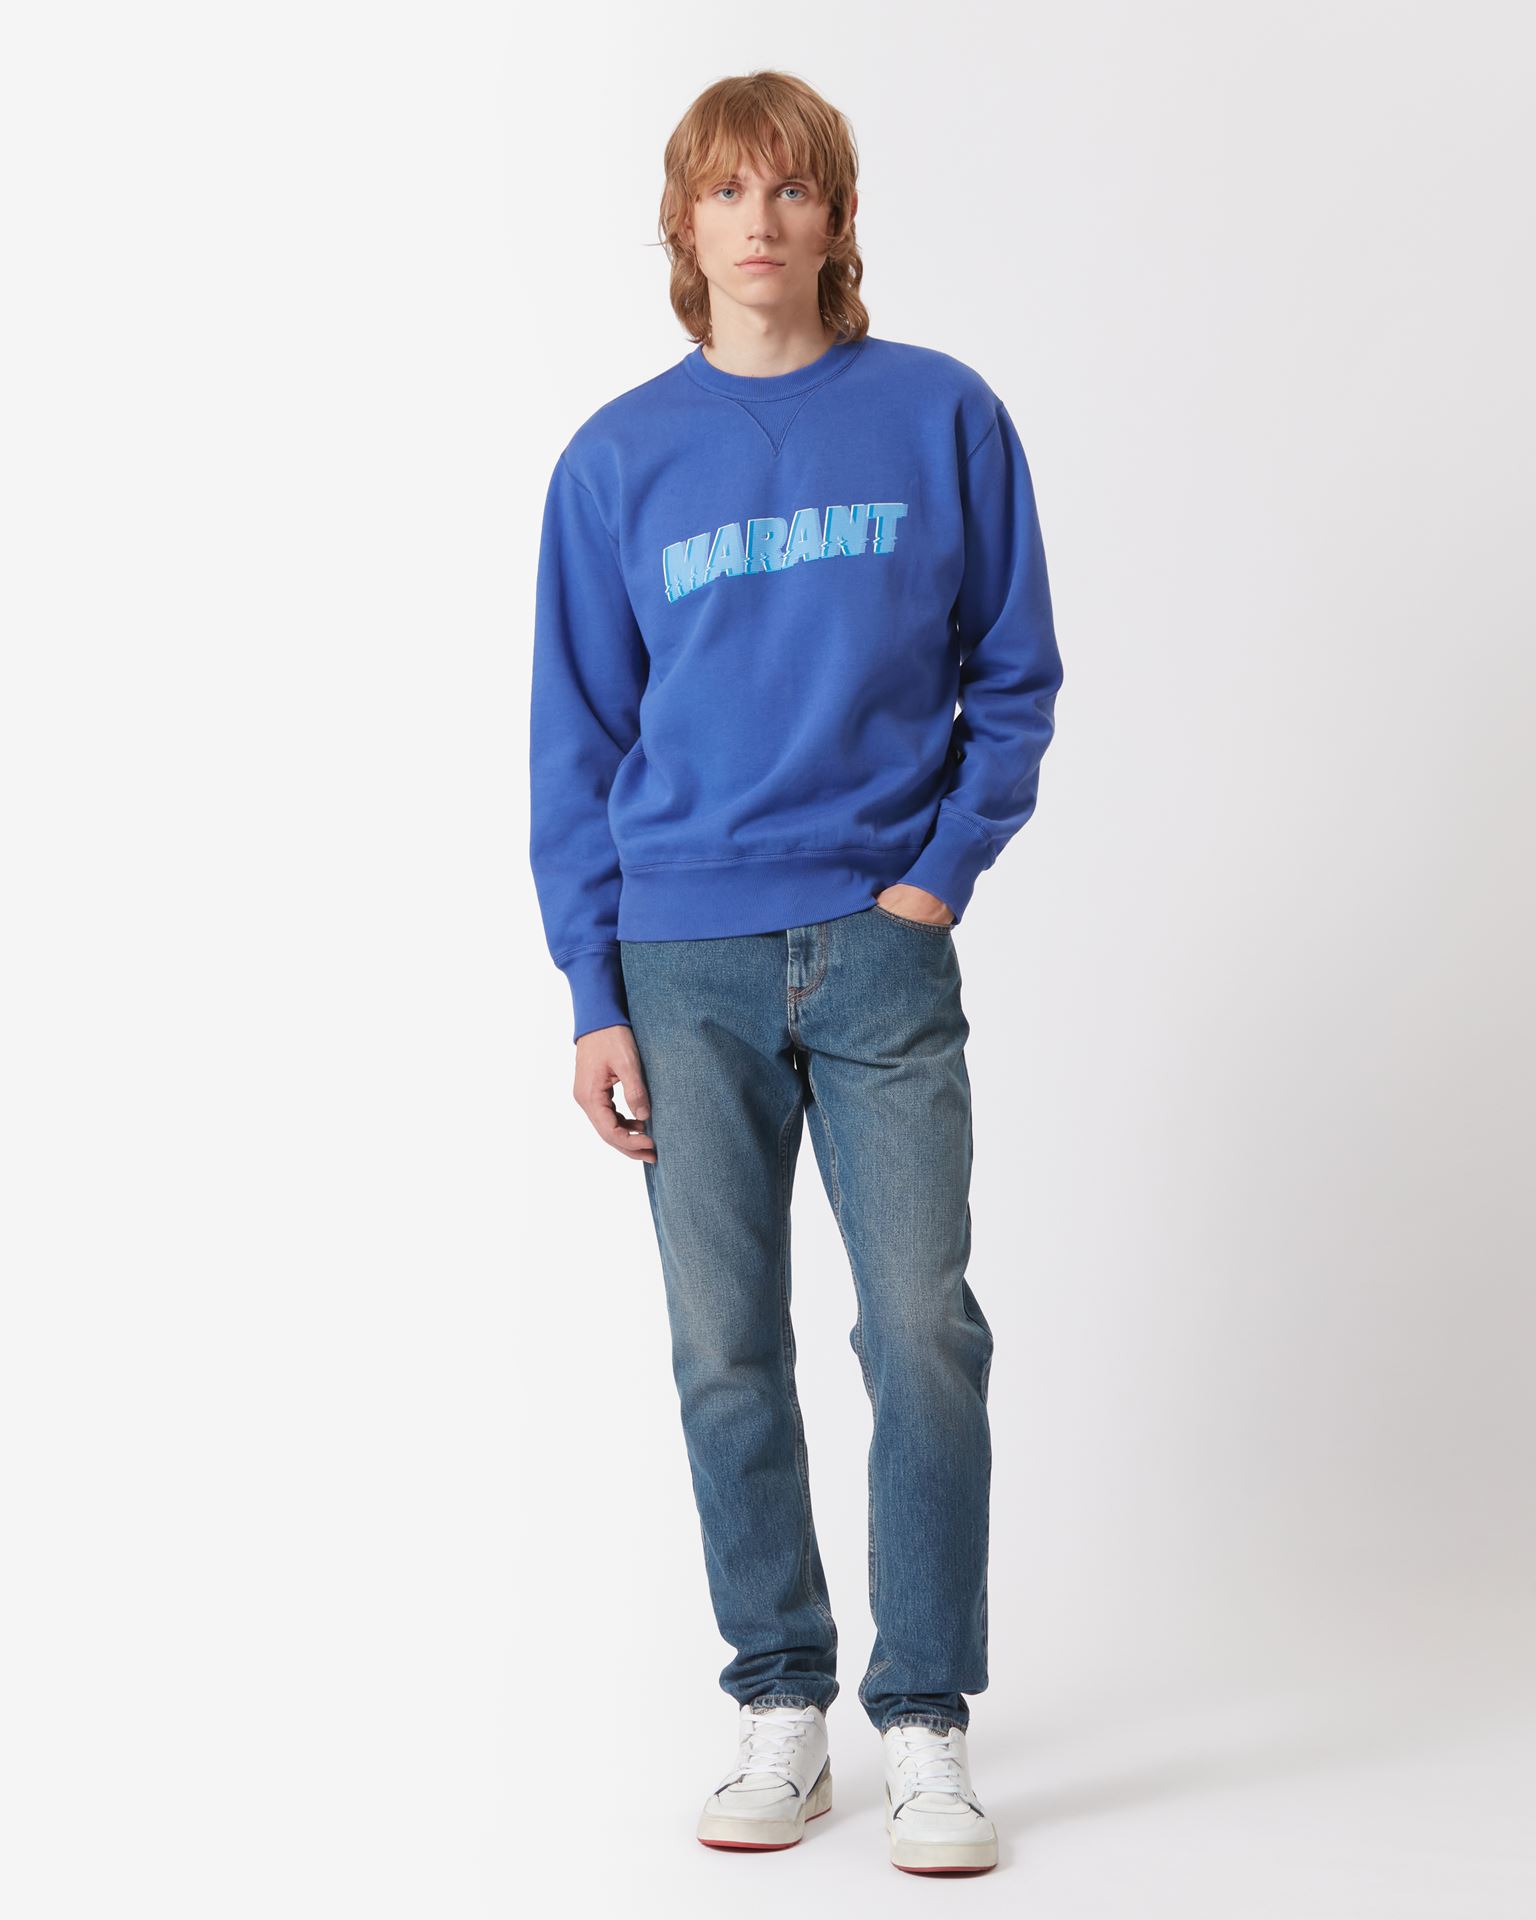 Isabel Marant, Sweatshirt marant Miky - Homme - Bleu